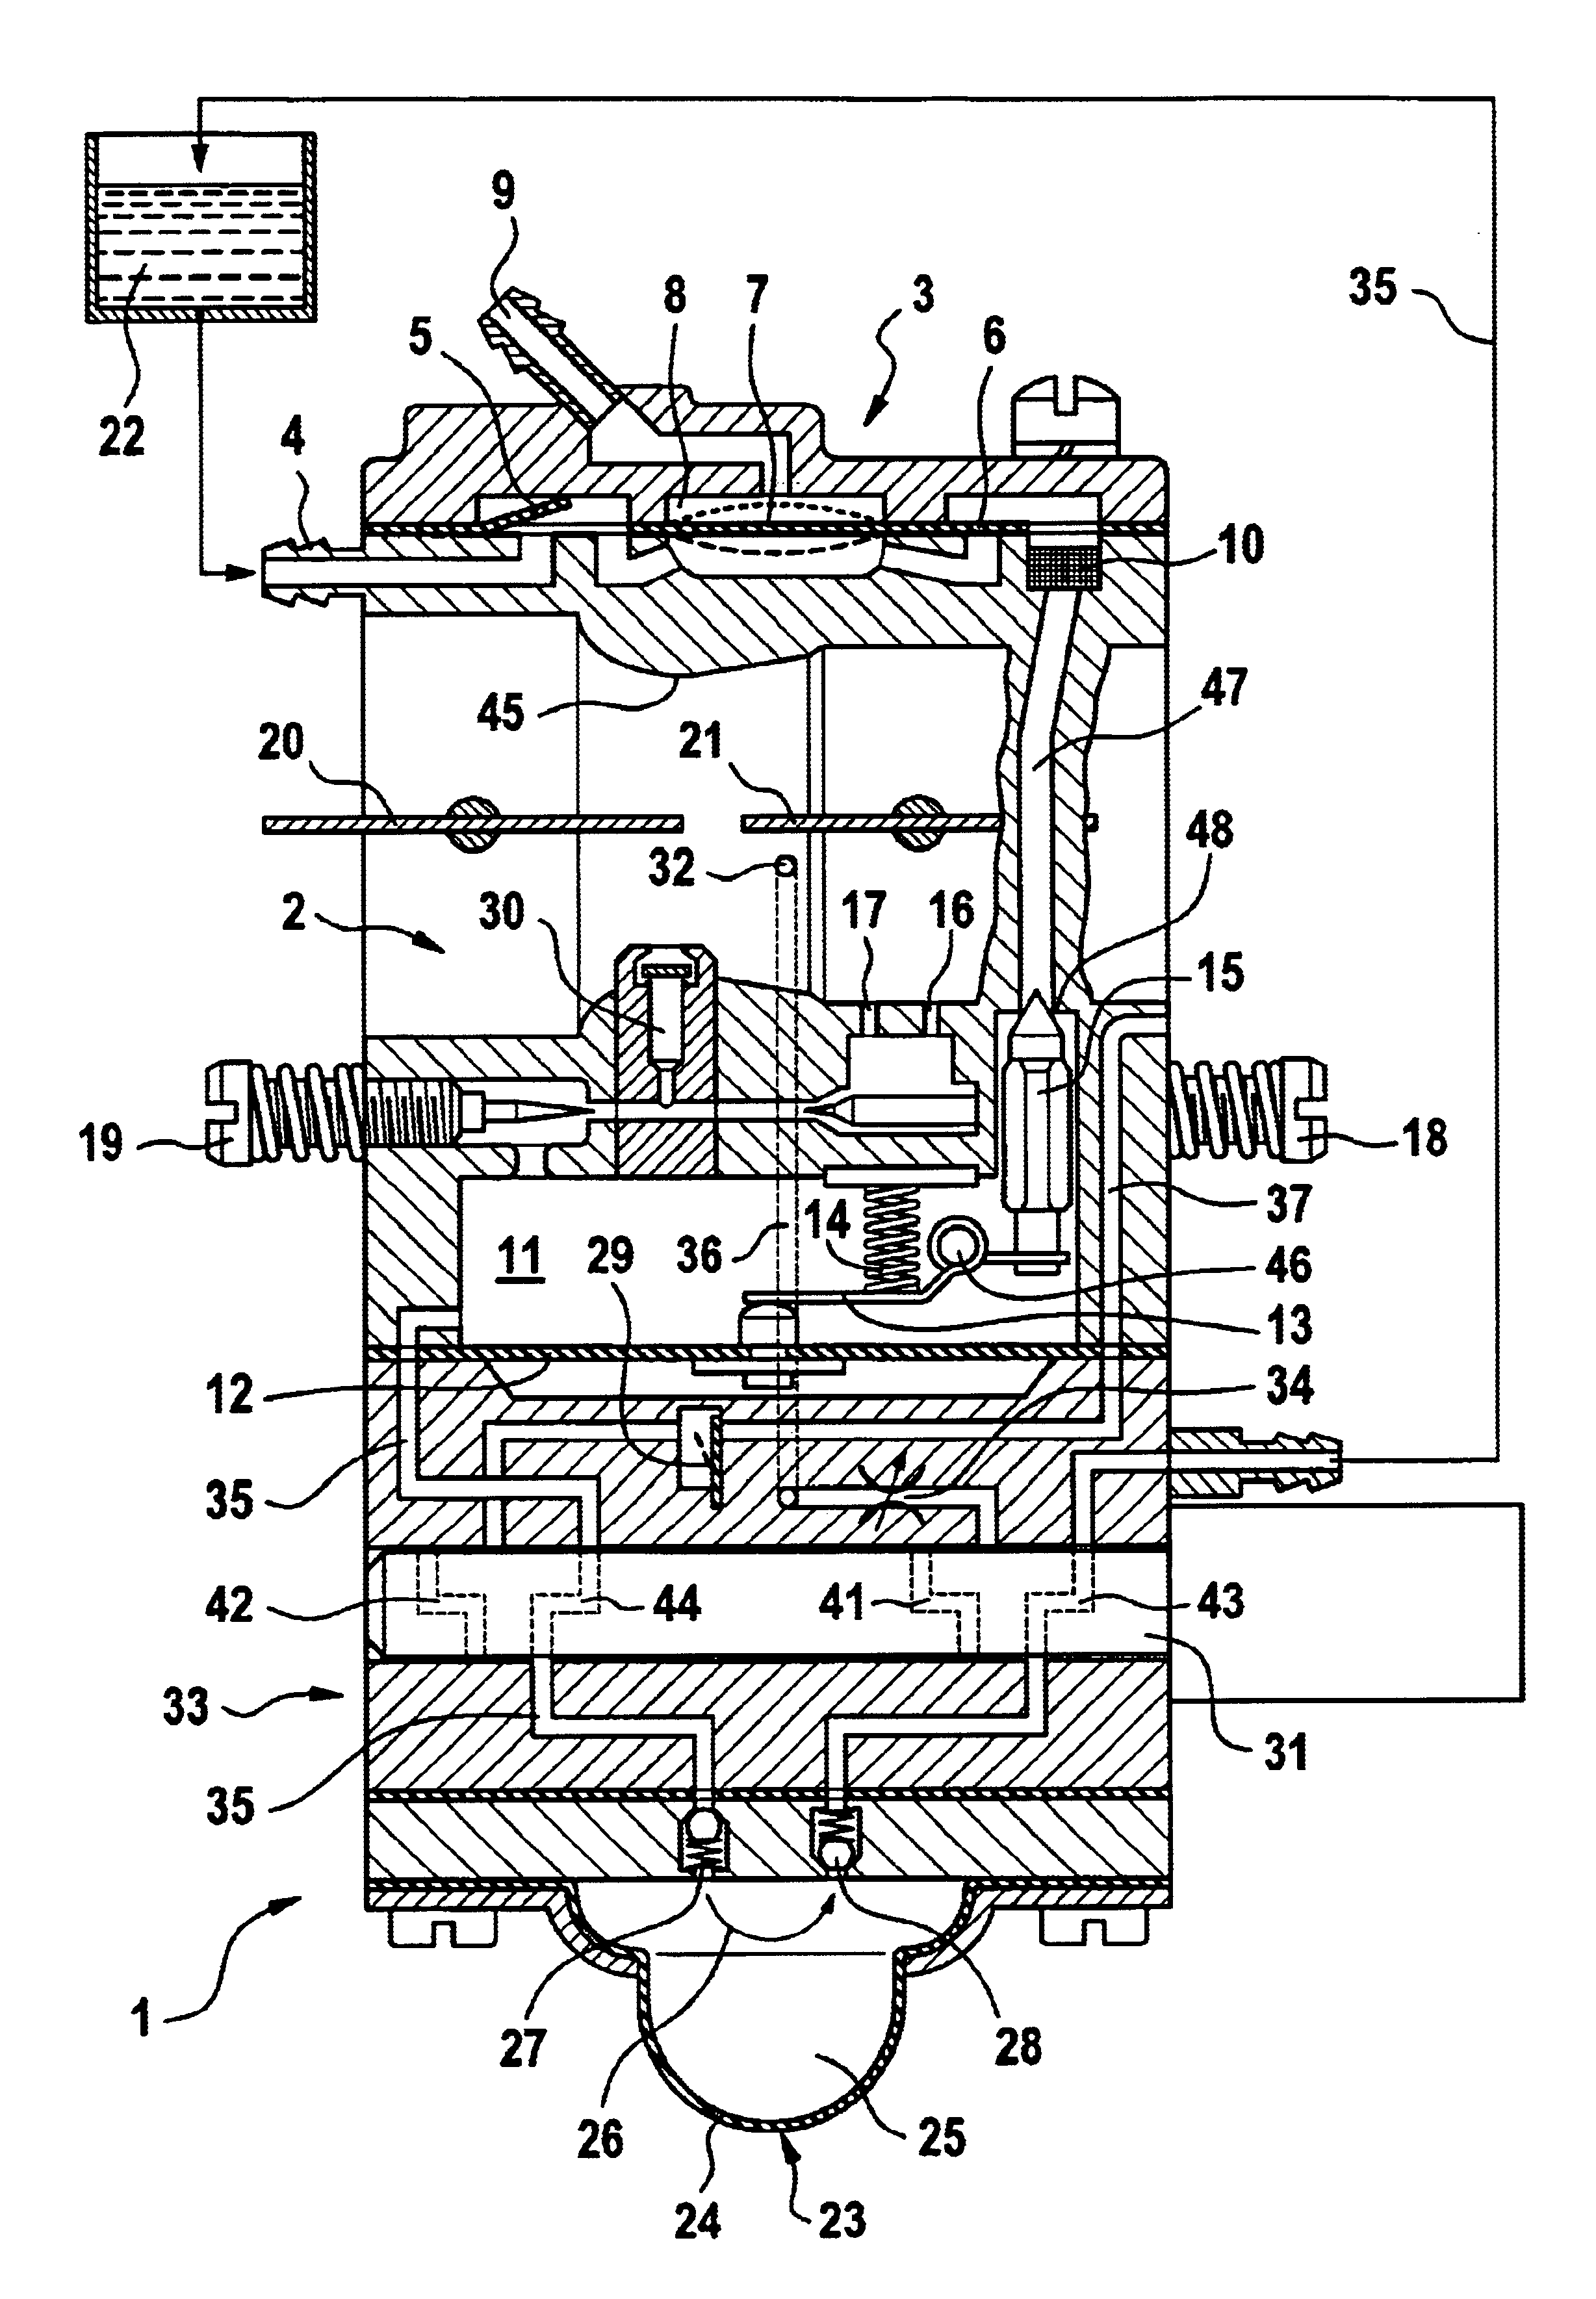 Carburetor arrangement